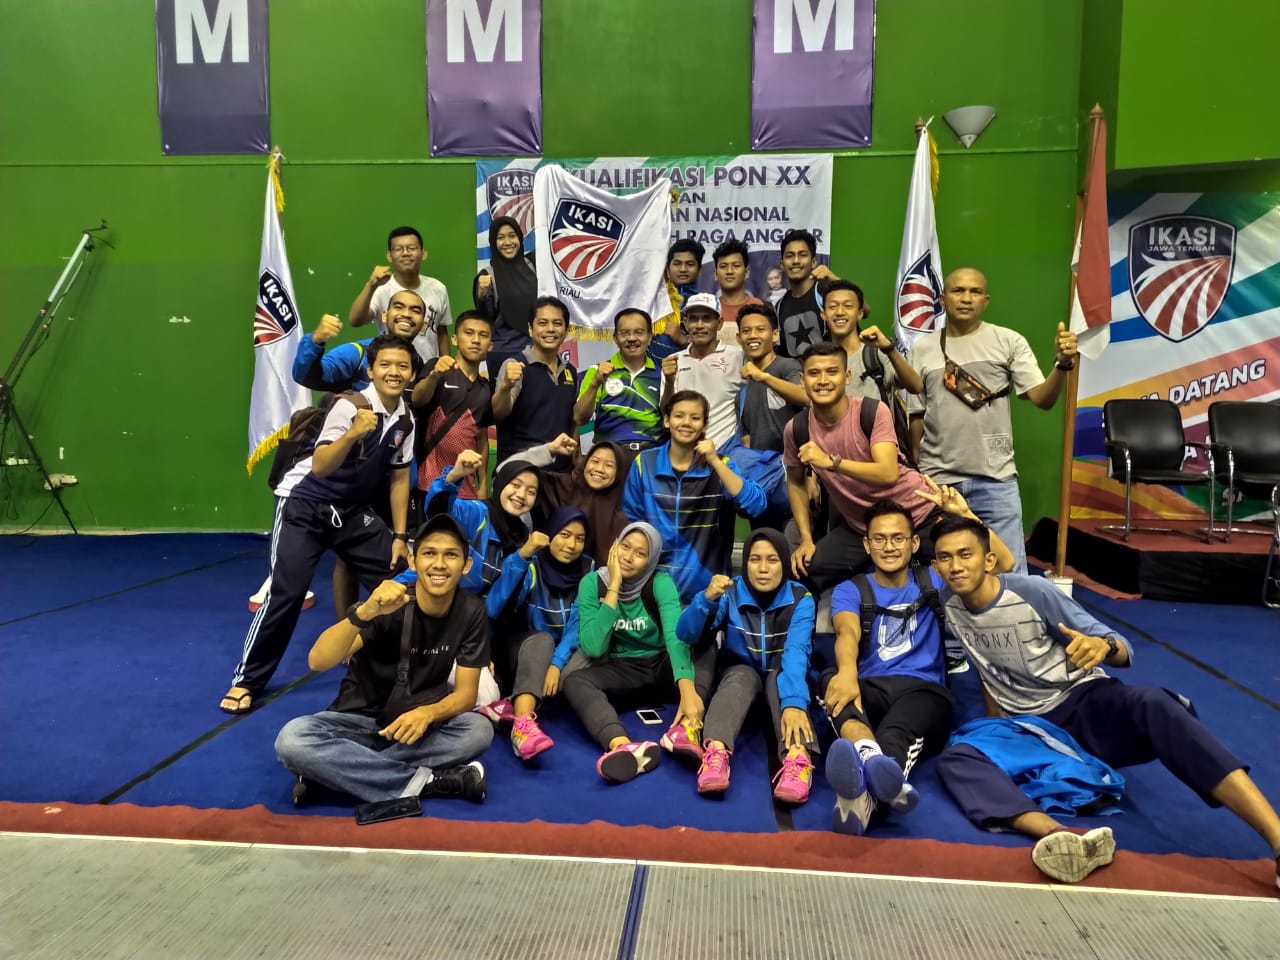  Riau Juara Umum Anggar, Bengkalis Sumbang Medali Terbanyak